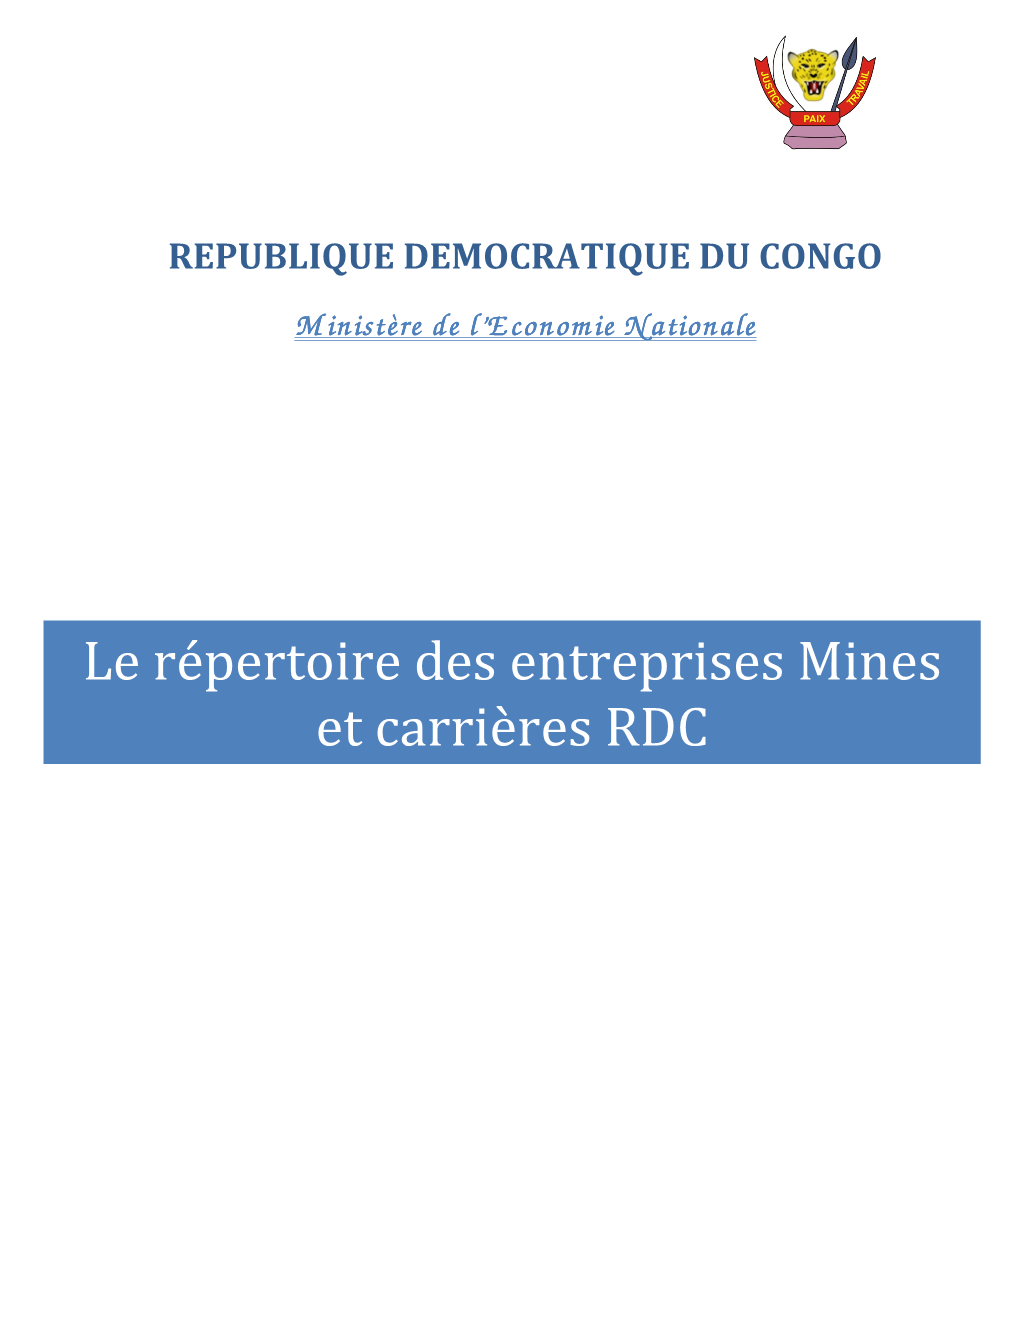 Le Répertoire Des Entreprises Mines Et Carrières RDC REPERTOIRE DES ENTREPISES MINES ET CARRIERES DE LA RD CONGO